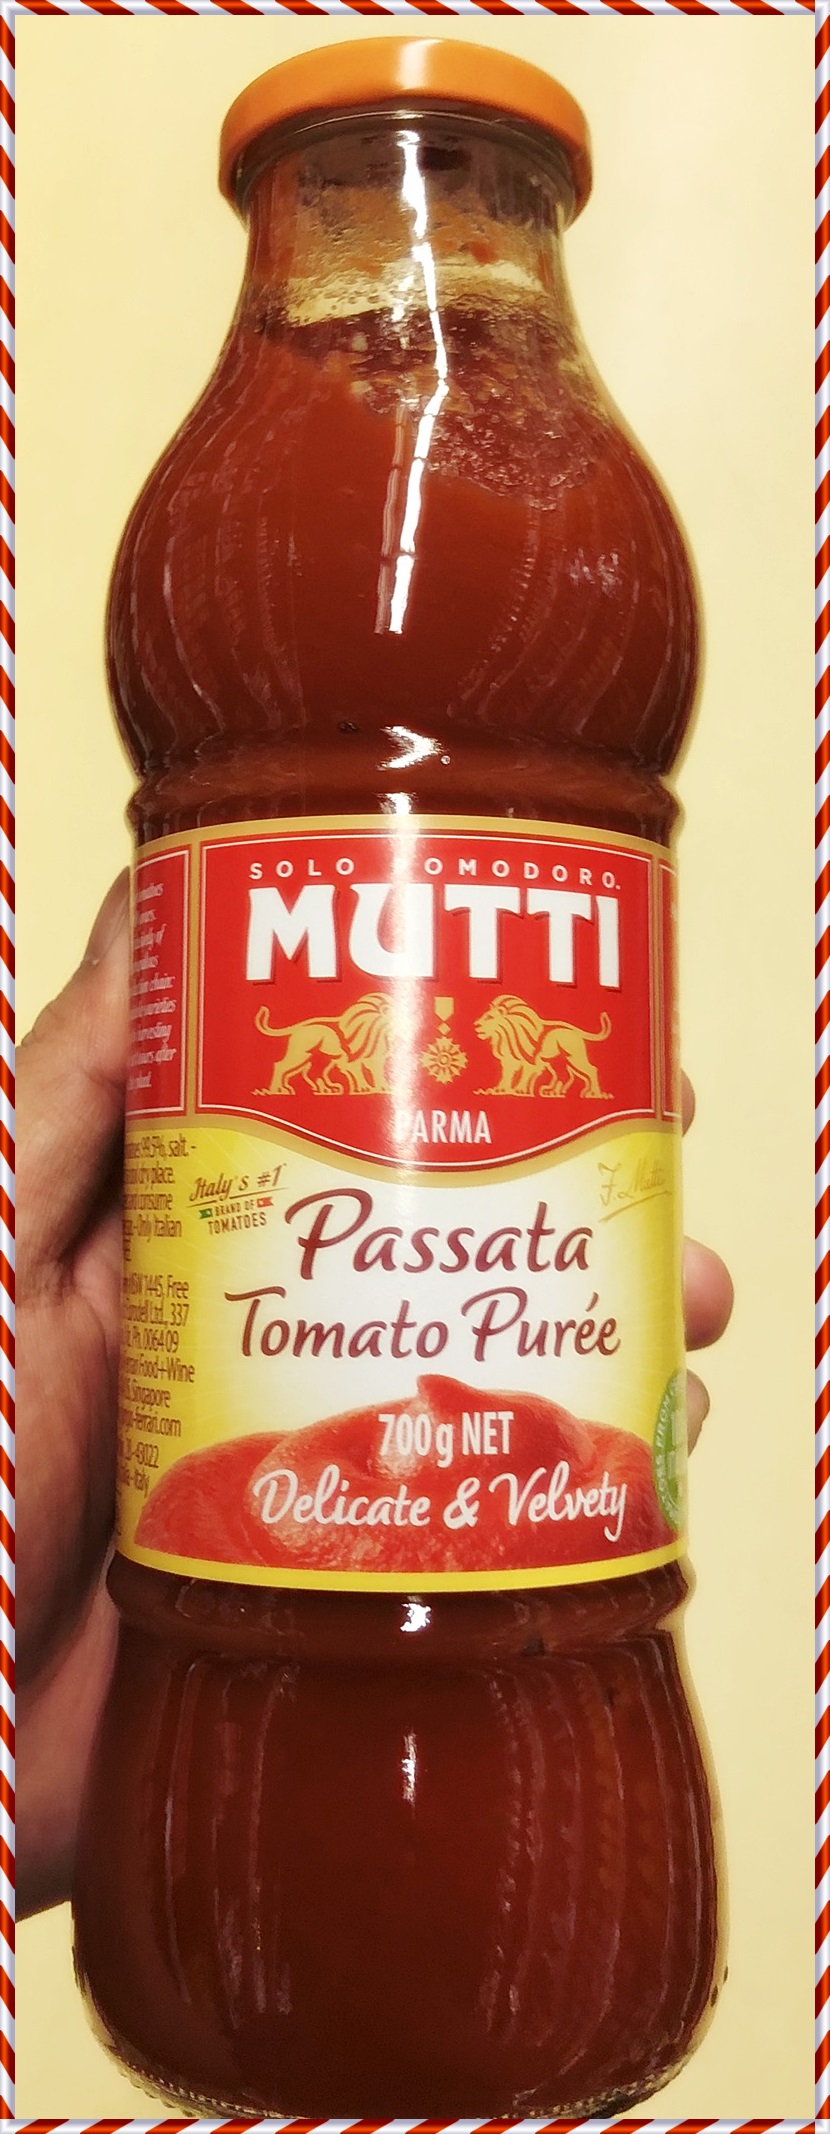 Mutti Passata Tomato Puree 700g (Italy). มุตติ พาสสาต้า (เนื้อมะเขือเทศบดละเอียด) 700กรัม (ประเทศอิตาลี).